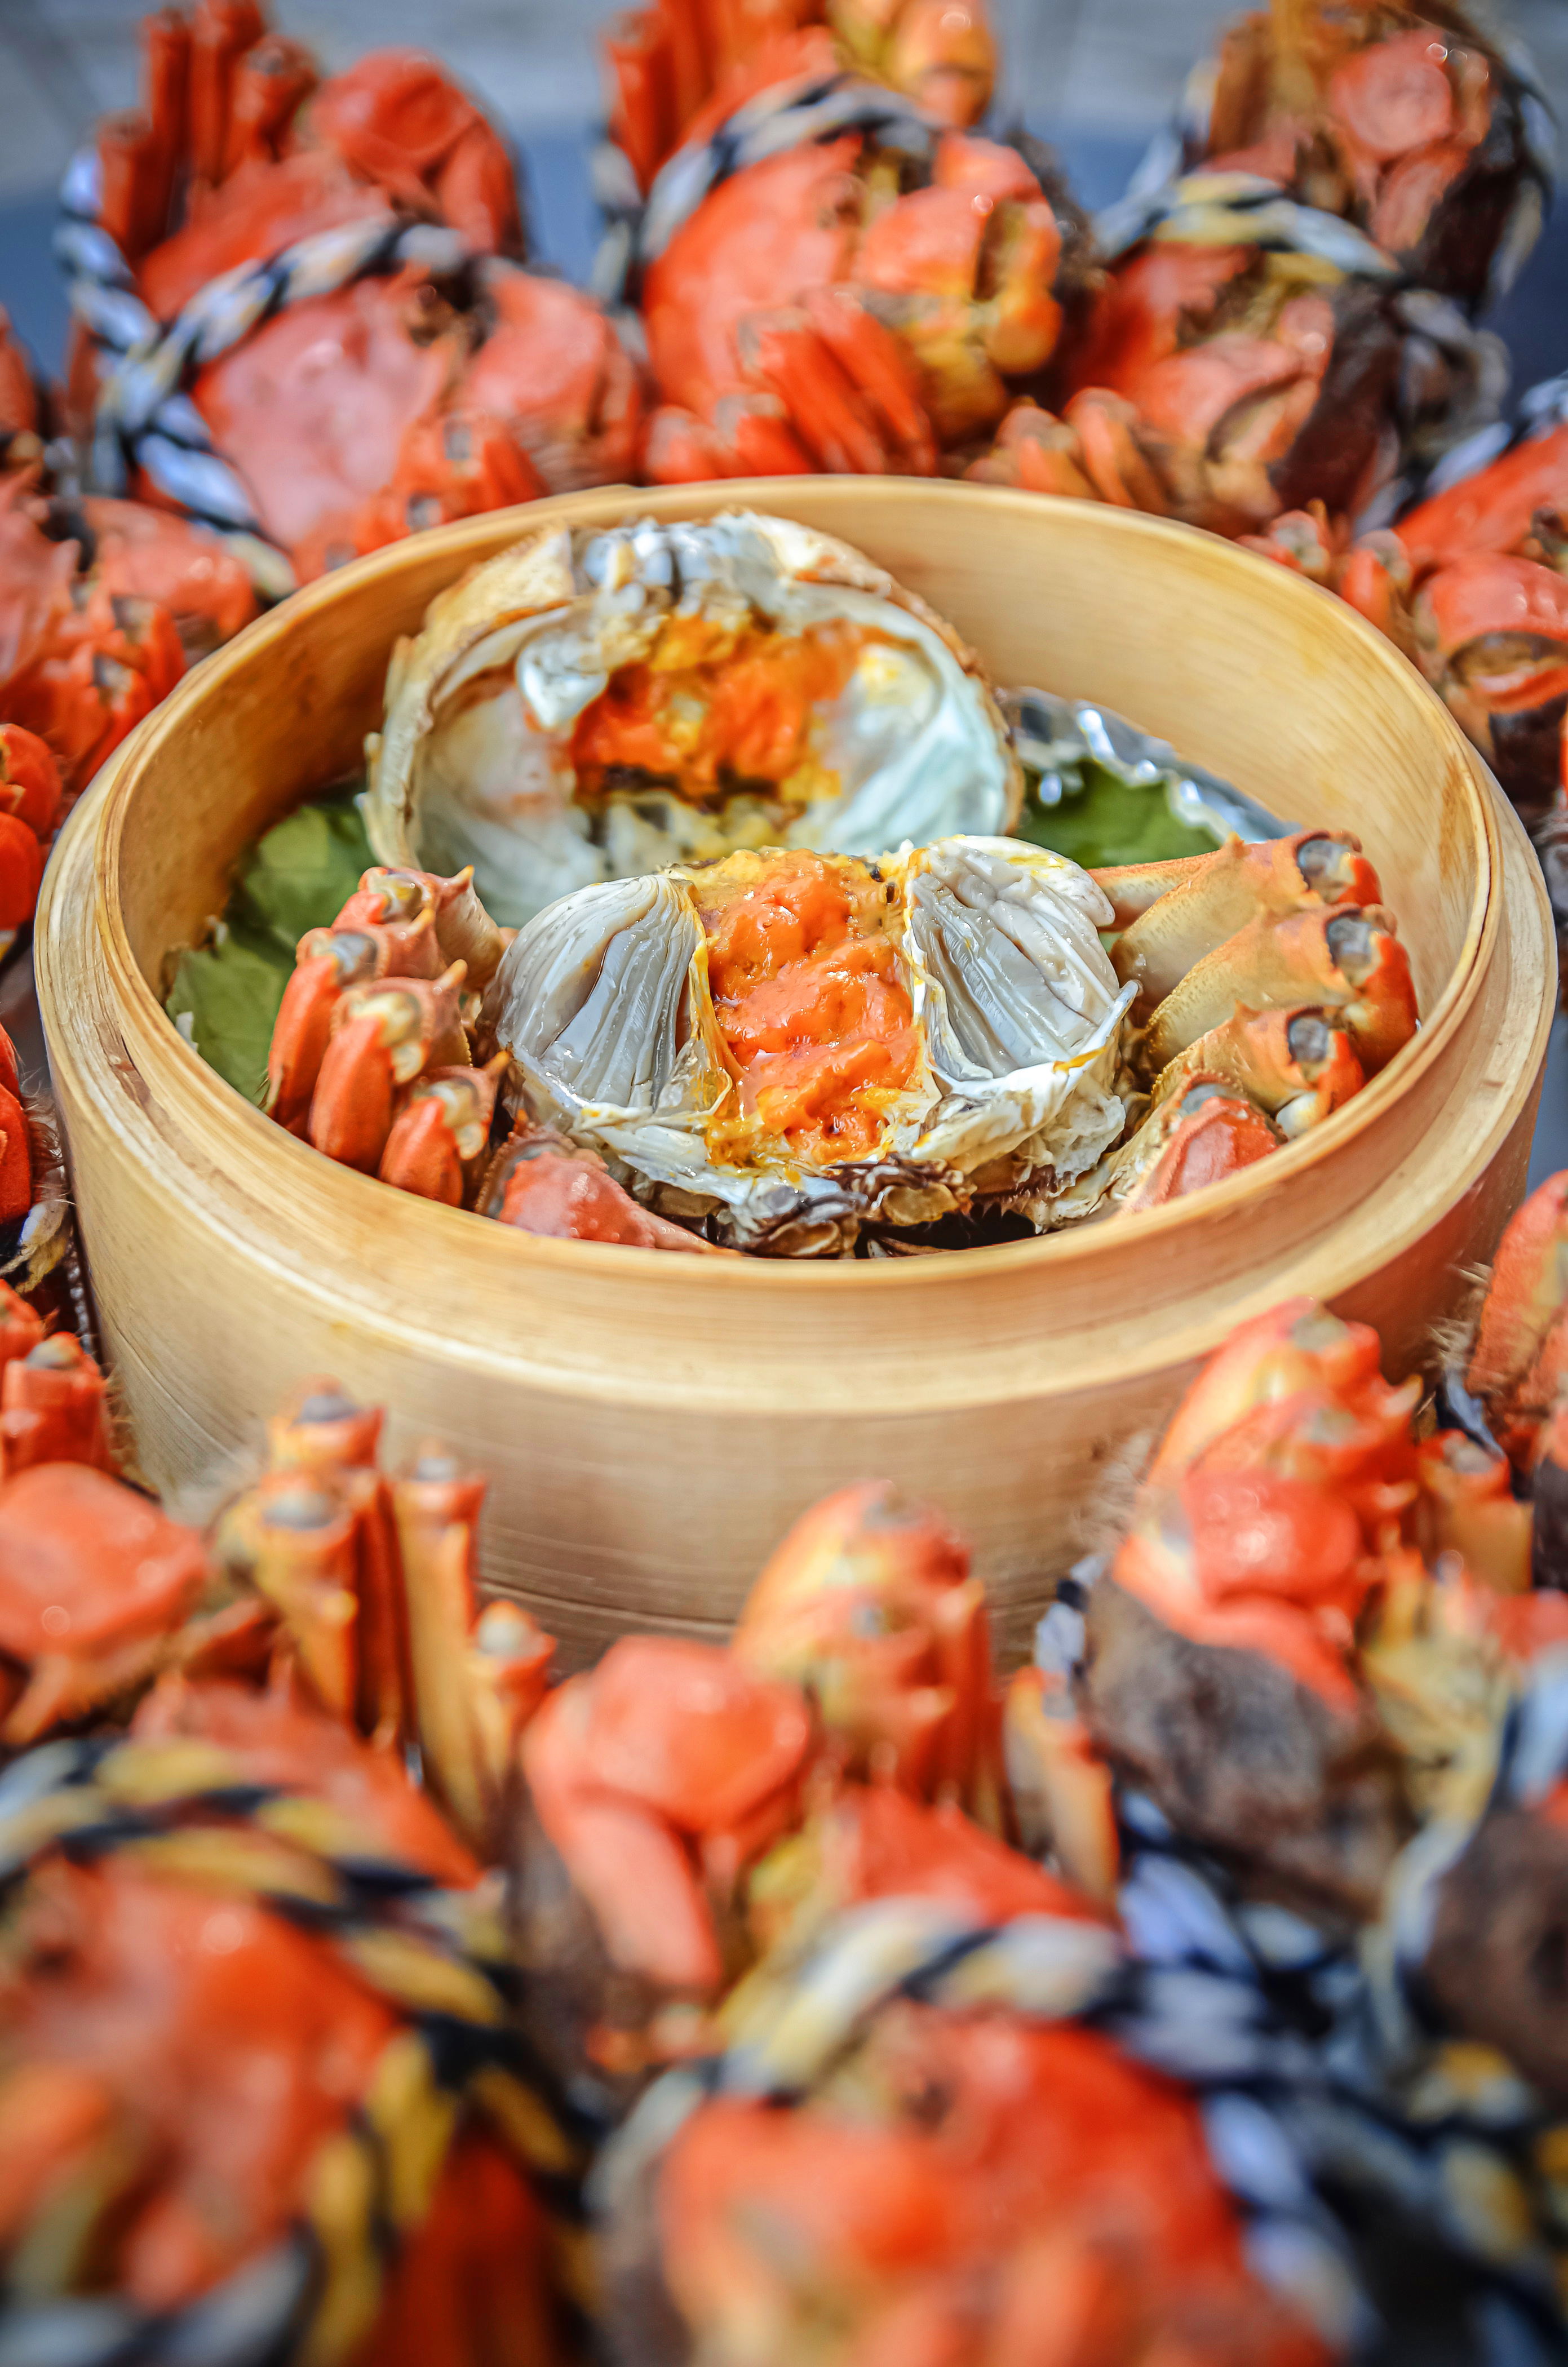 江城油焖排骨蟹:结合武汉本土喜爱的油焖蟹做法,加入排骨,一方面调味